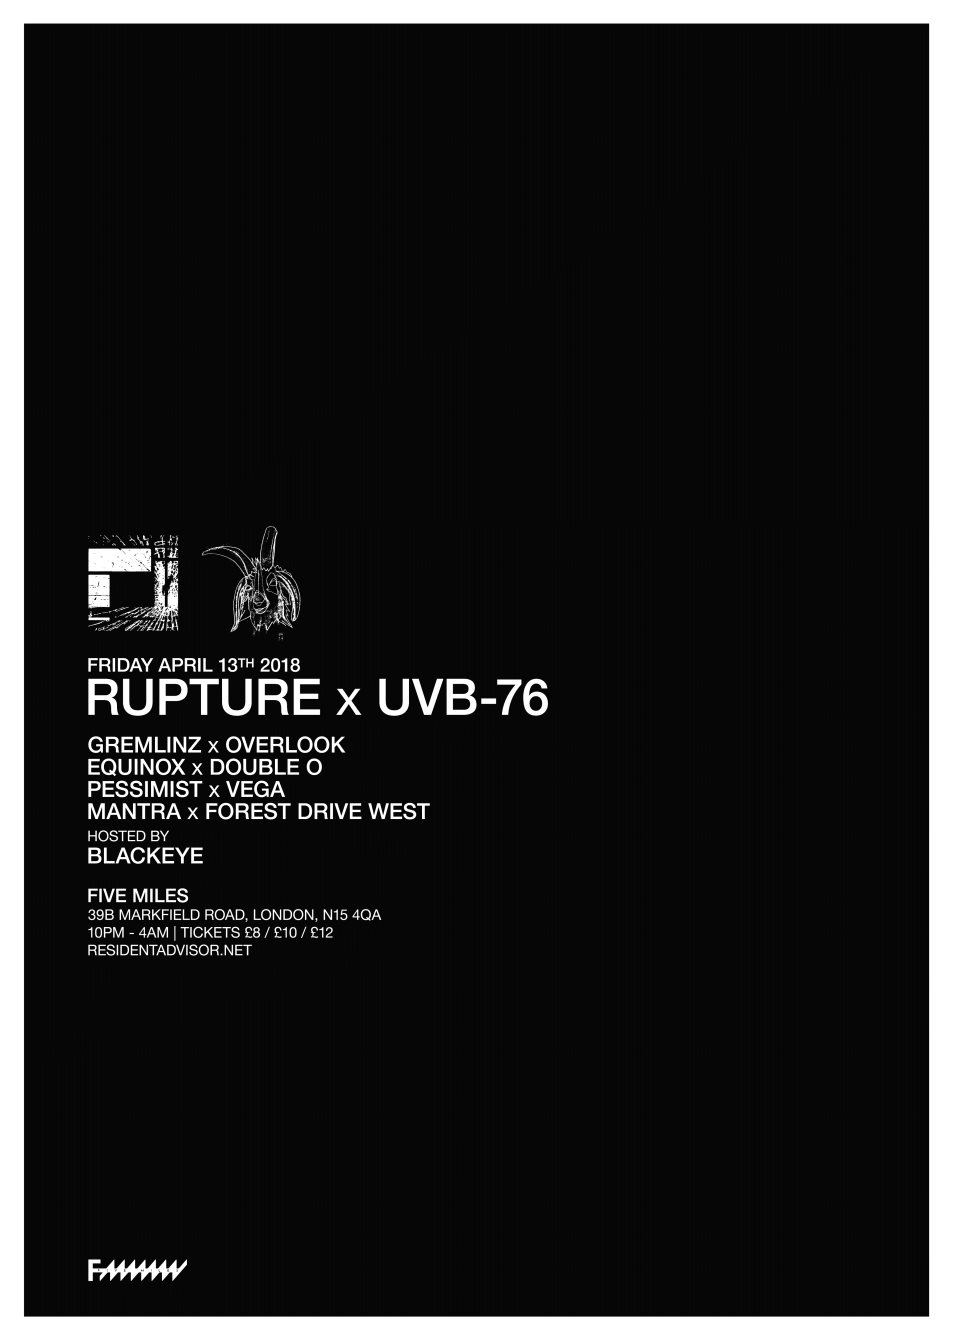 Rupture x UVB-76 - Flyer front